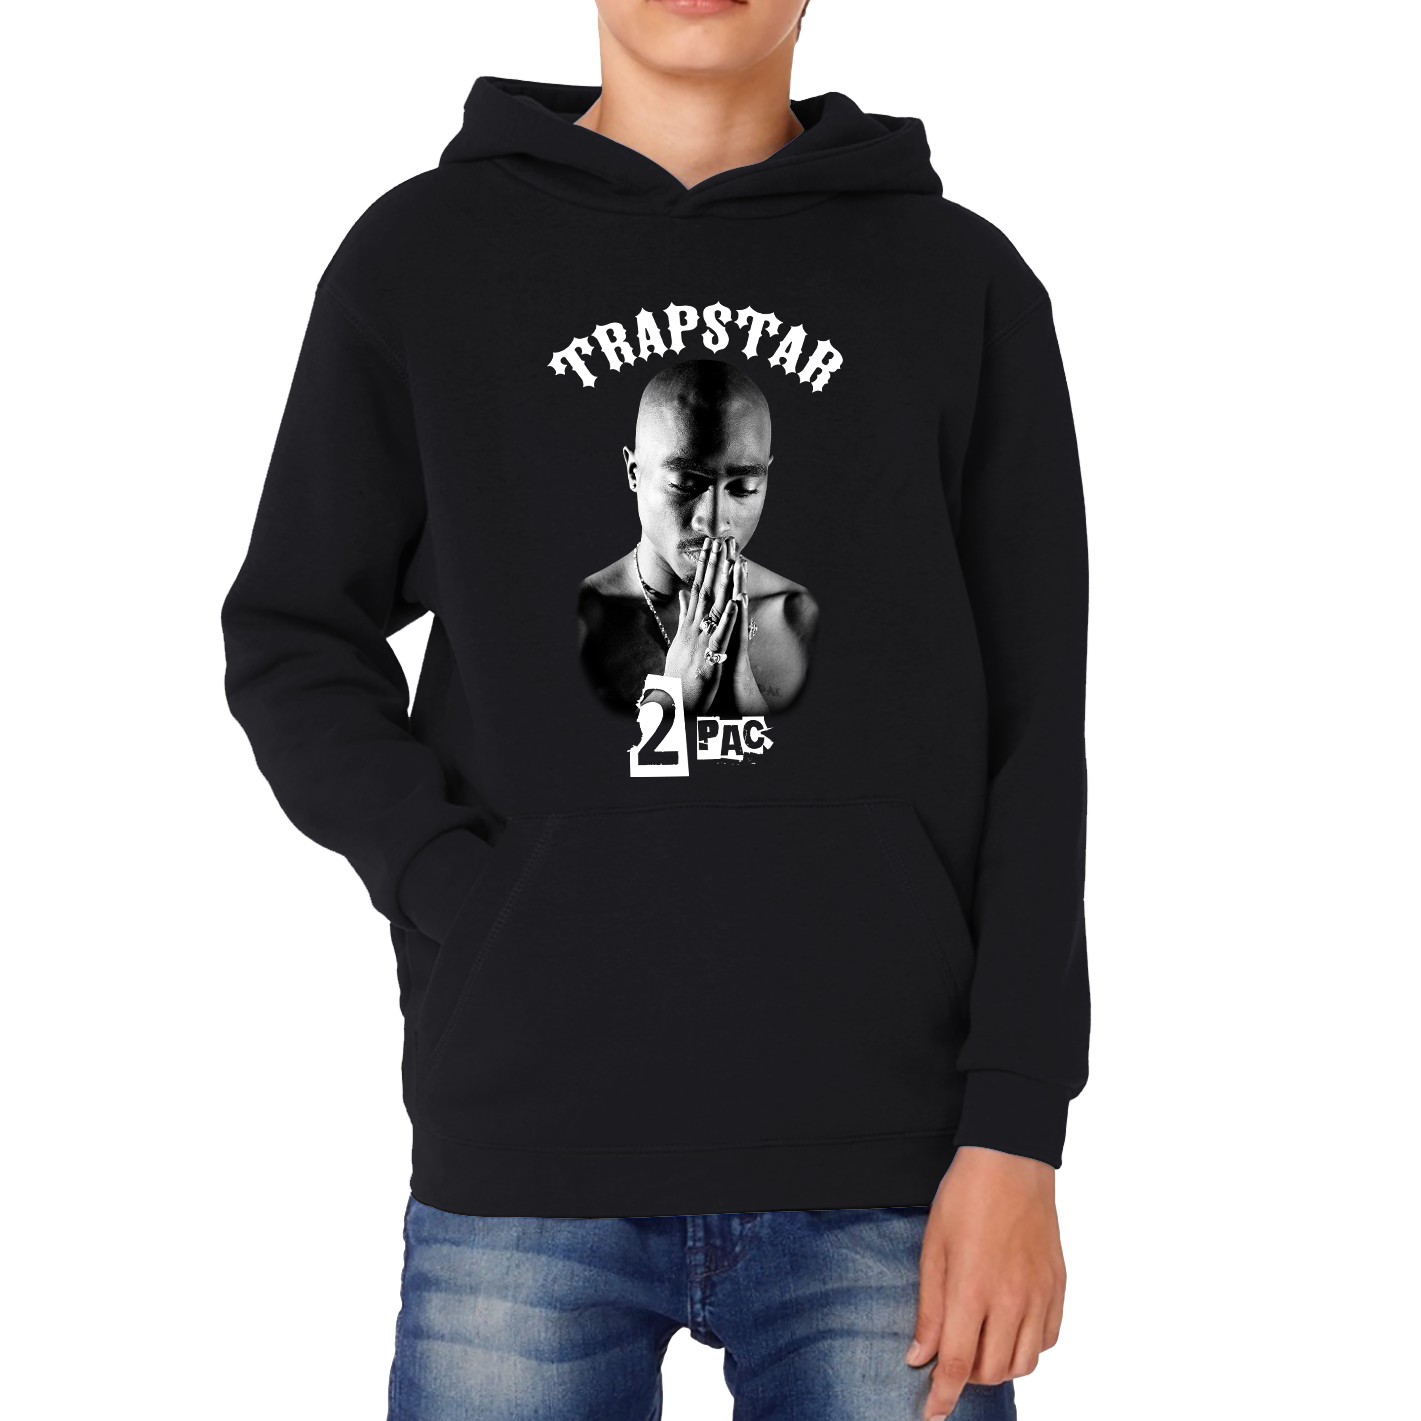 Trapstar 2pac Hoodie Tupac Shakur American Rapper Hip Hop Lovers Music Gift Kids Hoodie